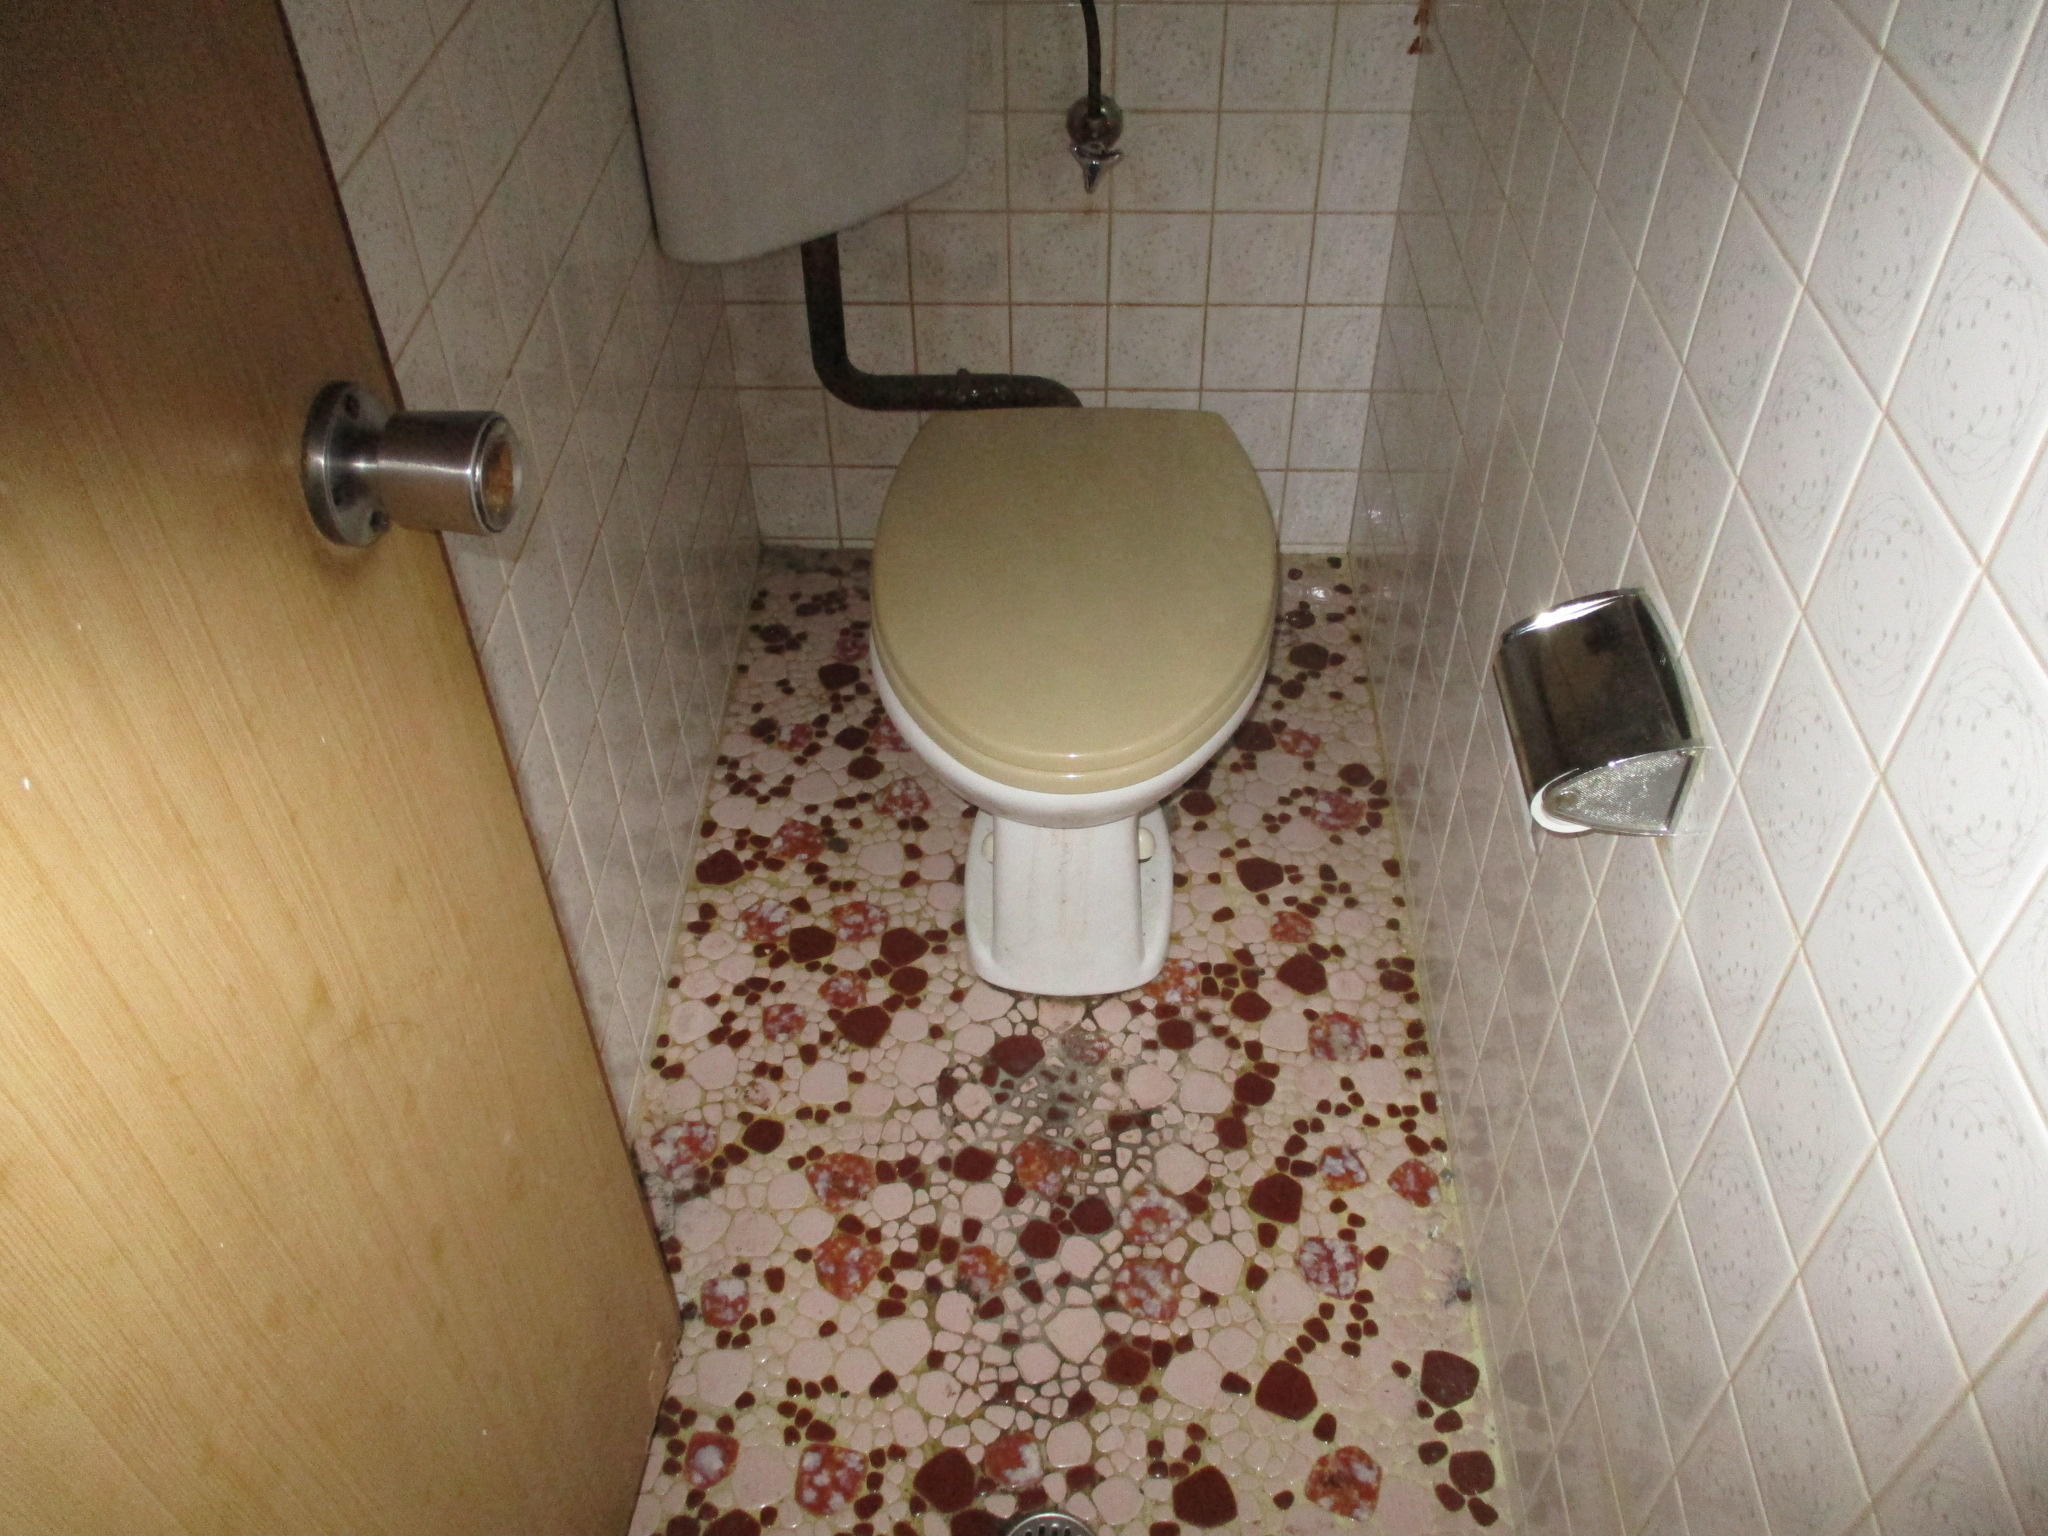 トイレ1.JPG